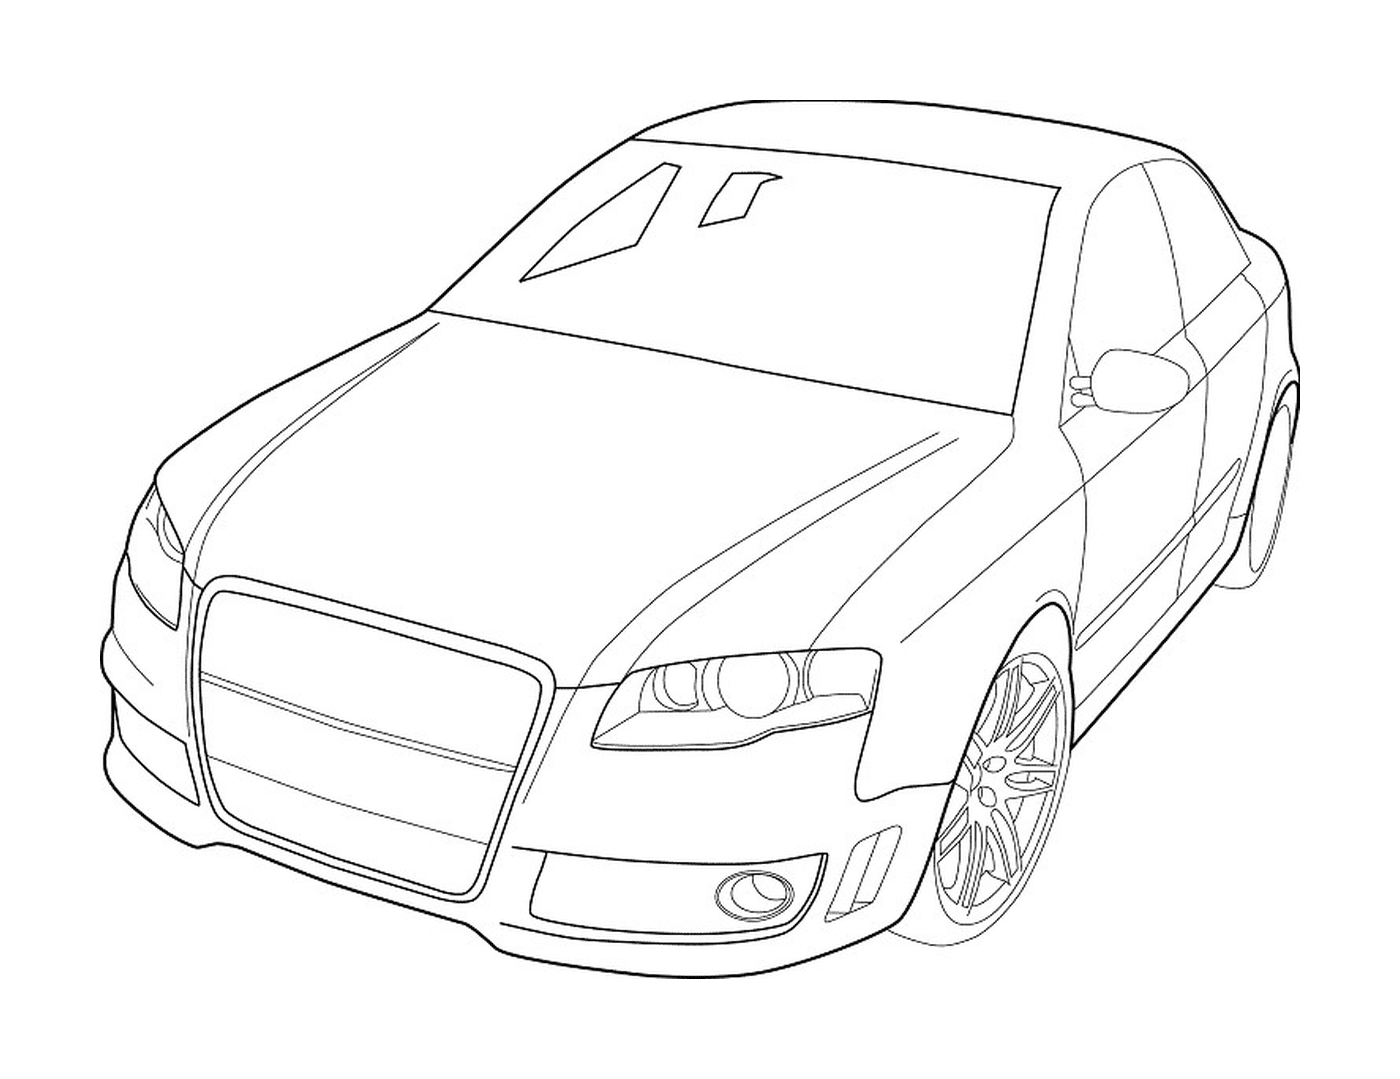  Car Audi designed 